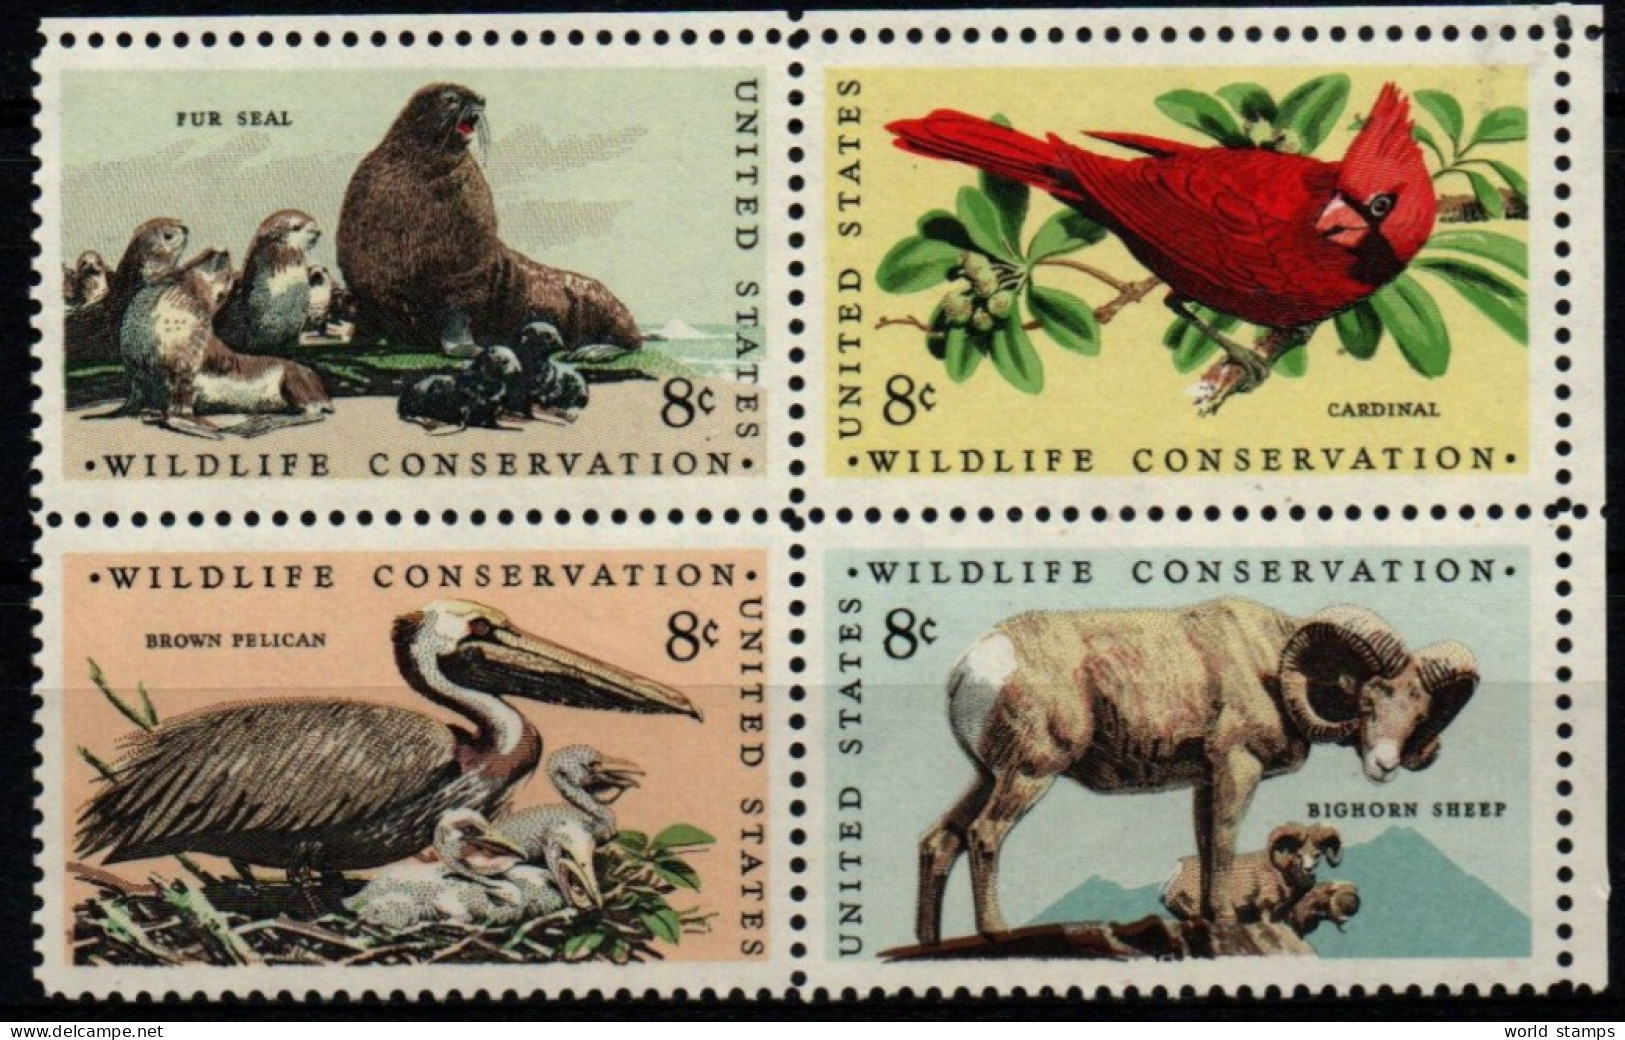 ETATS-UNIS D'AMERIQUE 1972 * - Unused Stamps